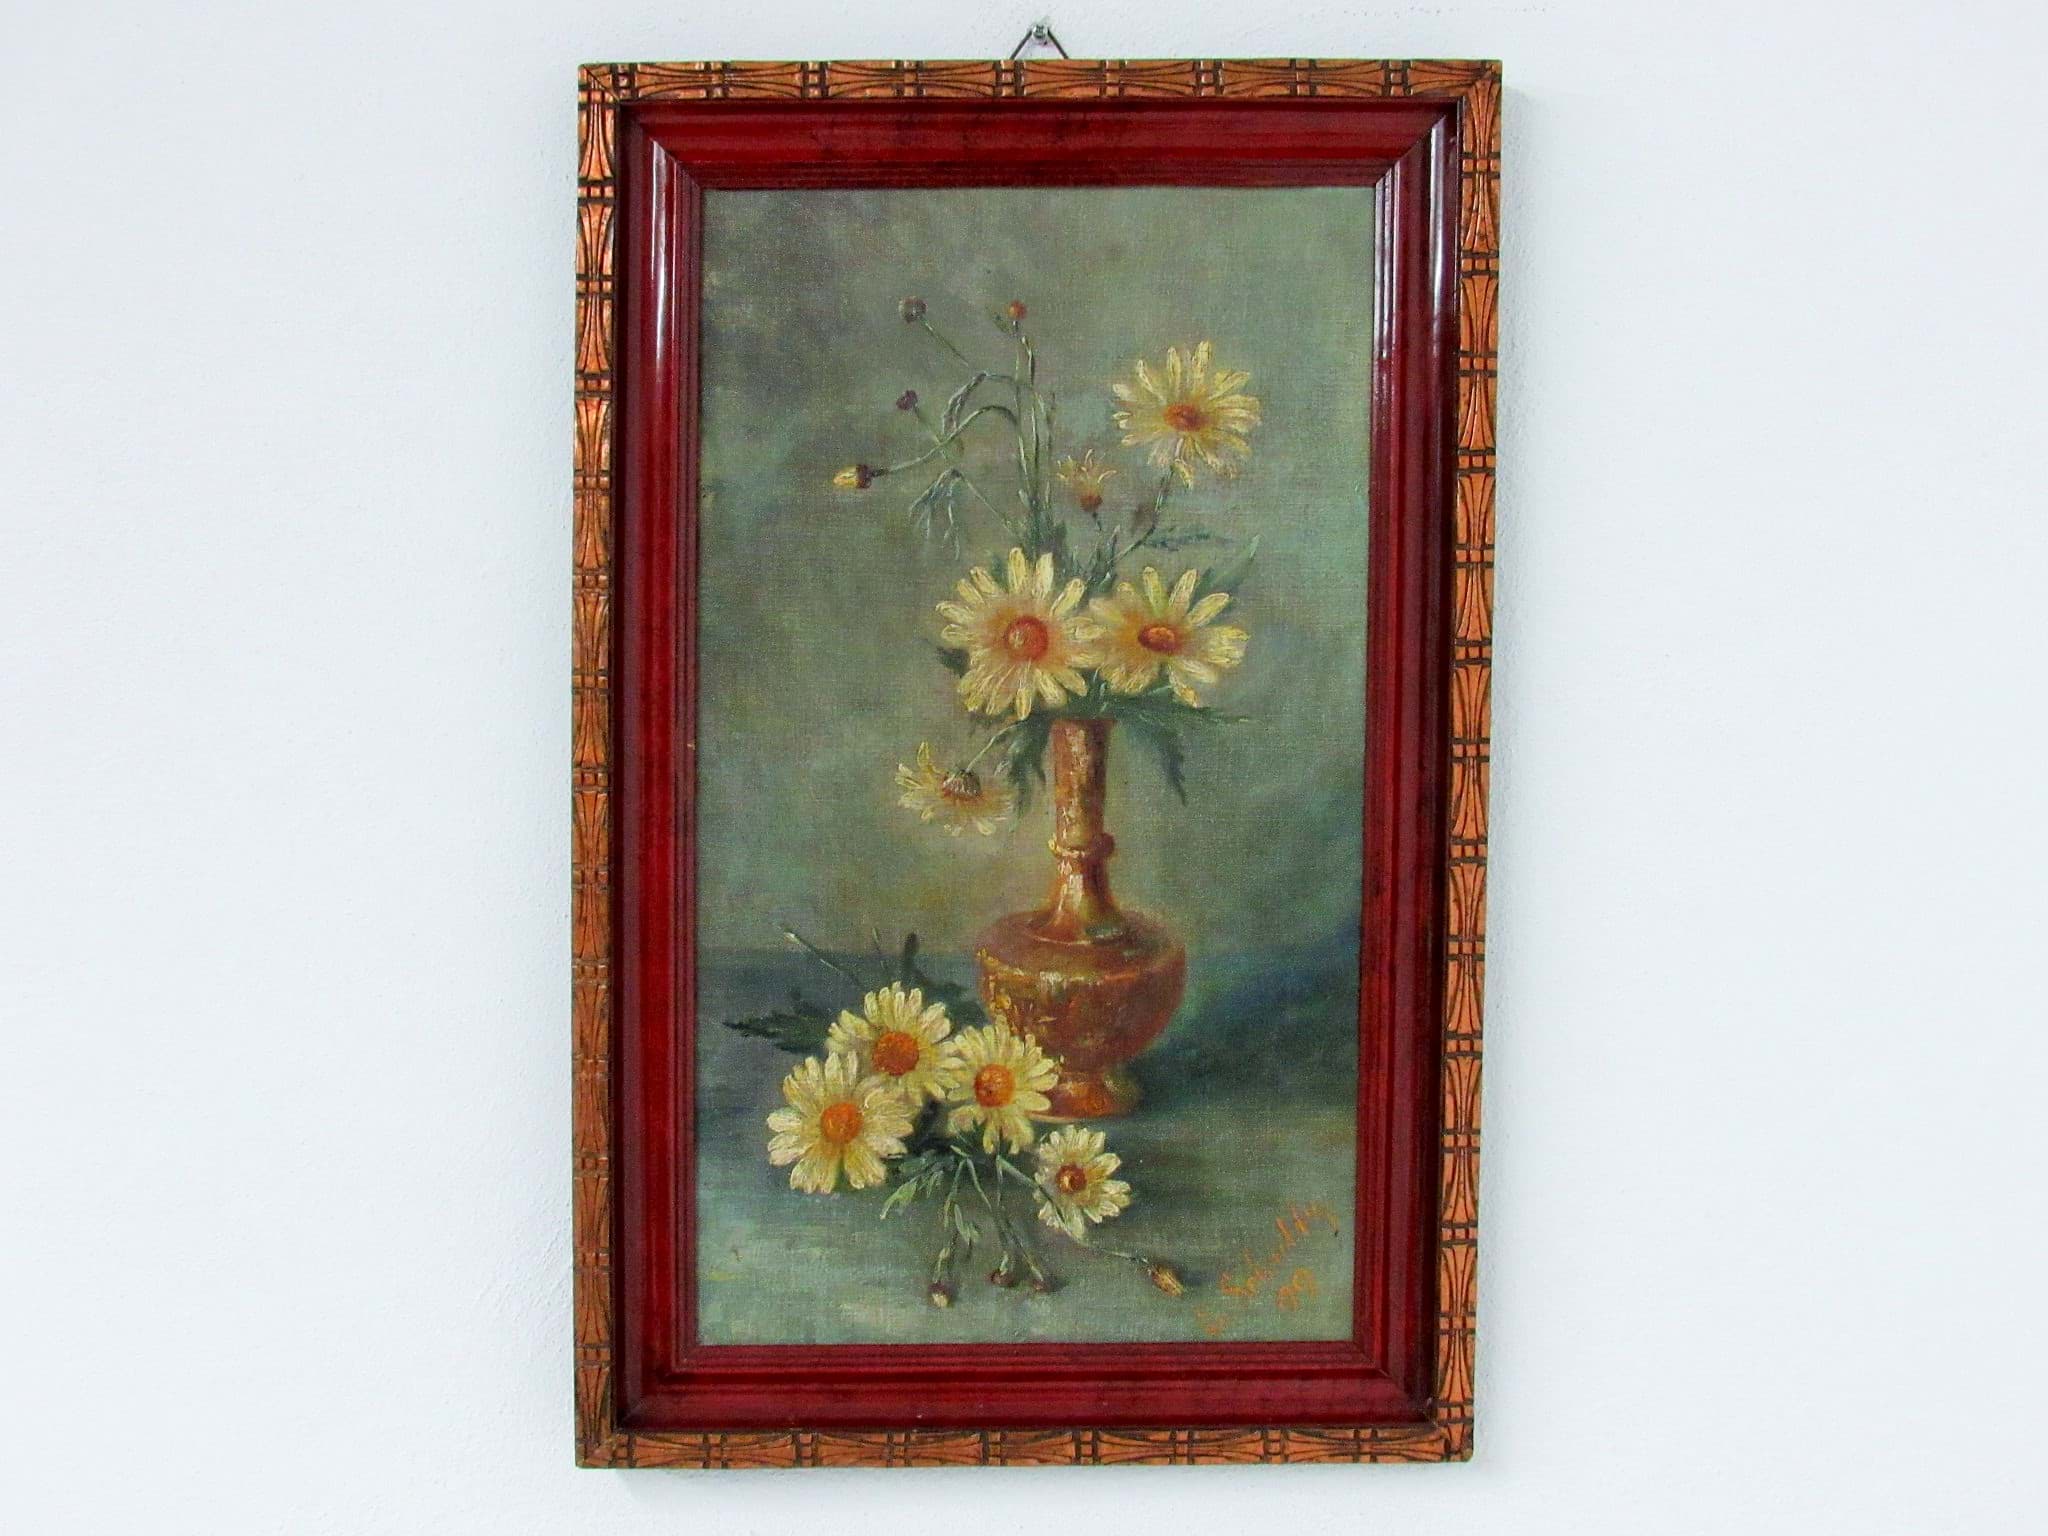 Afbeelding van Antik Gemälde / Ölbild, Blumen Stillleben um 1900, Öl/Malkarton, gerahmt, signiert E. Schultz (?) & datiert